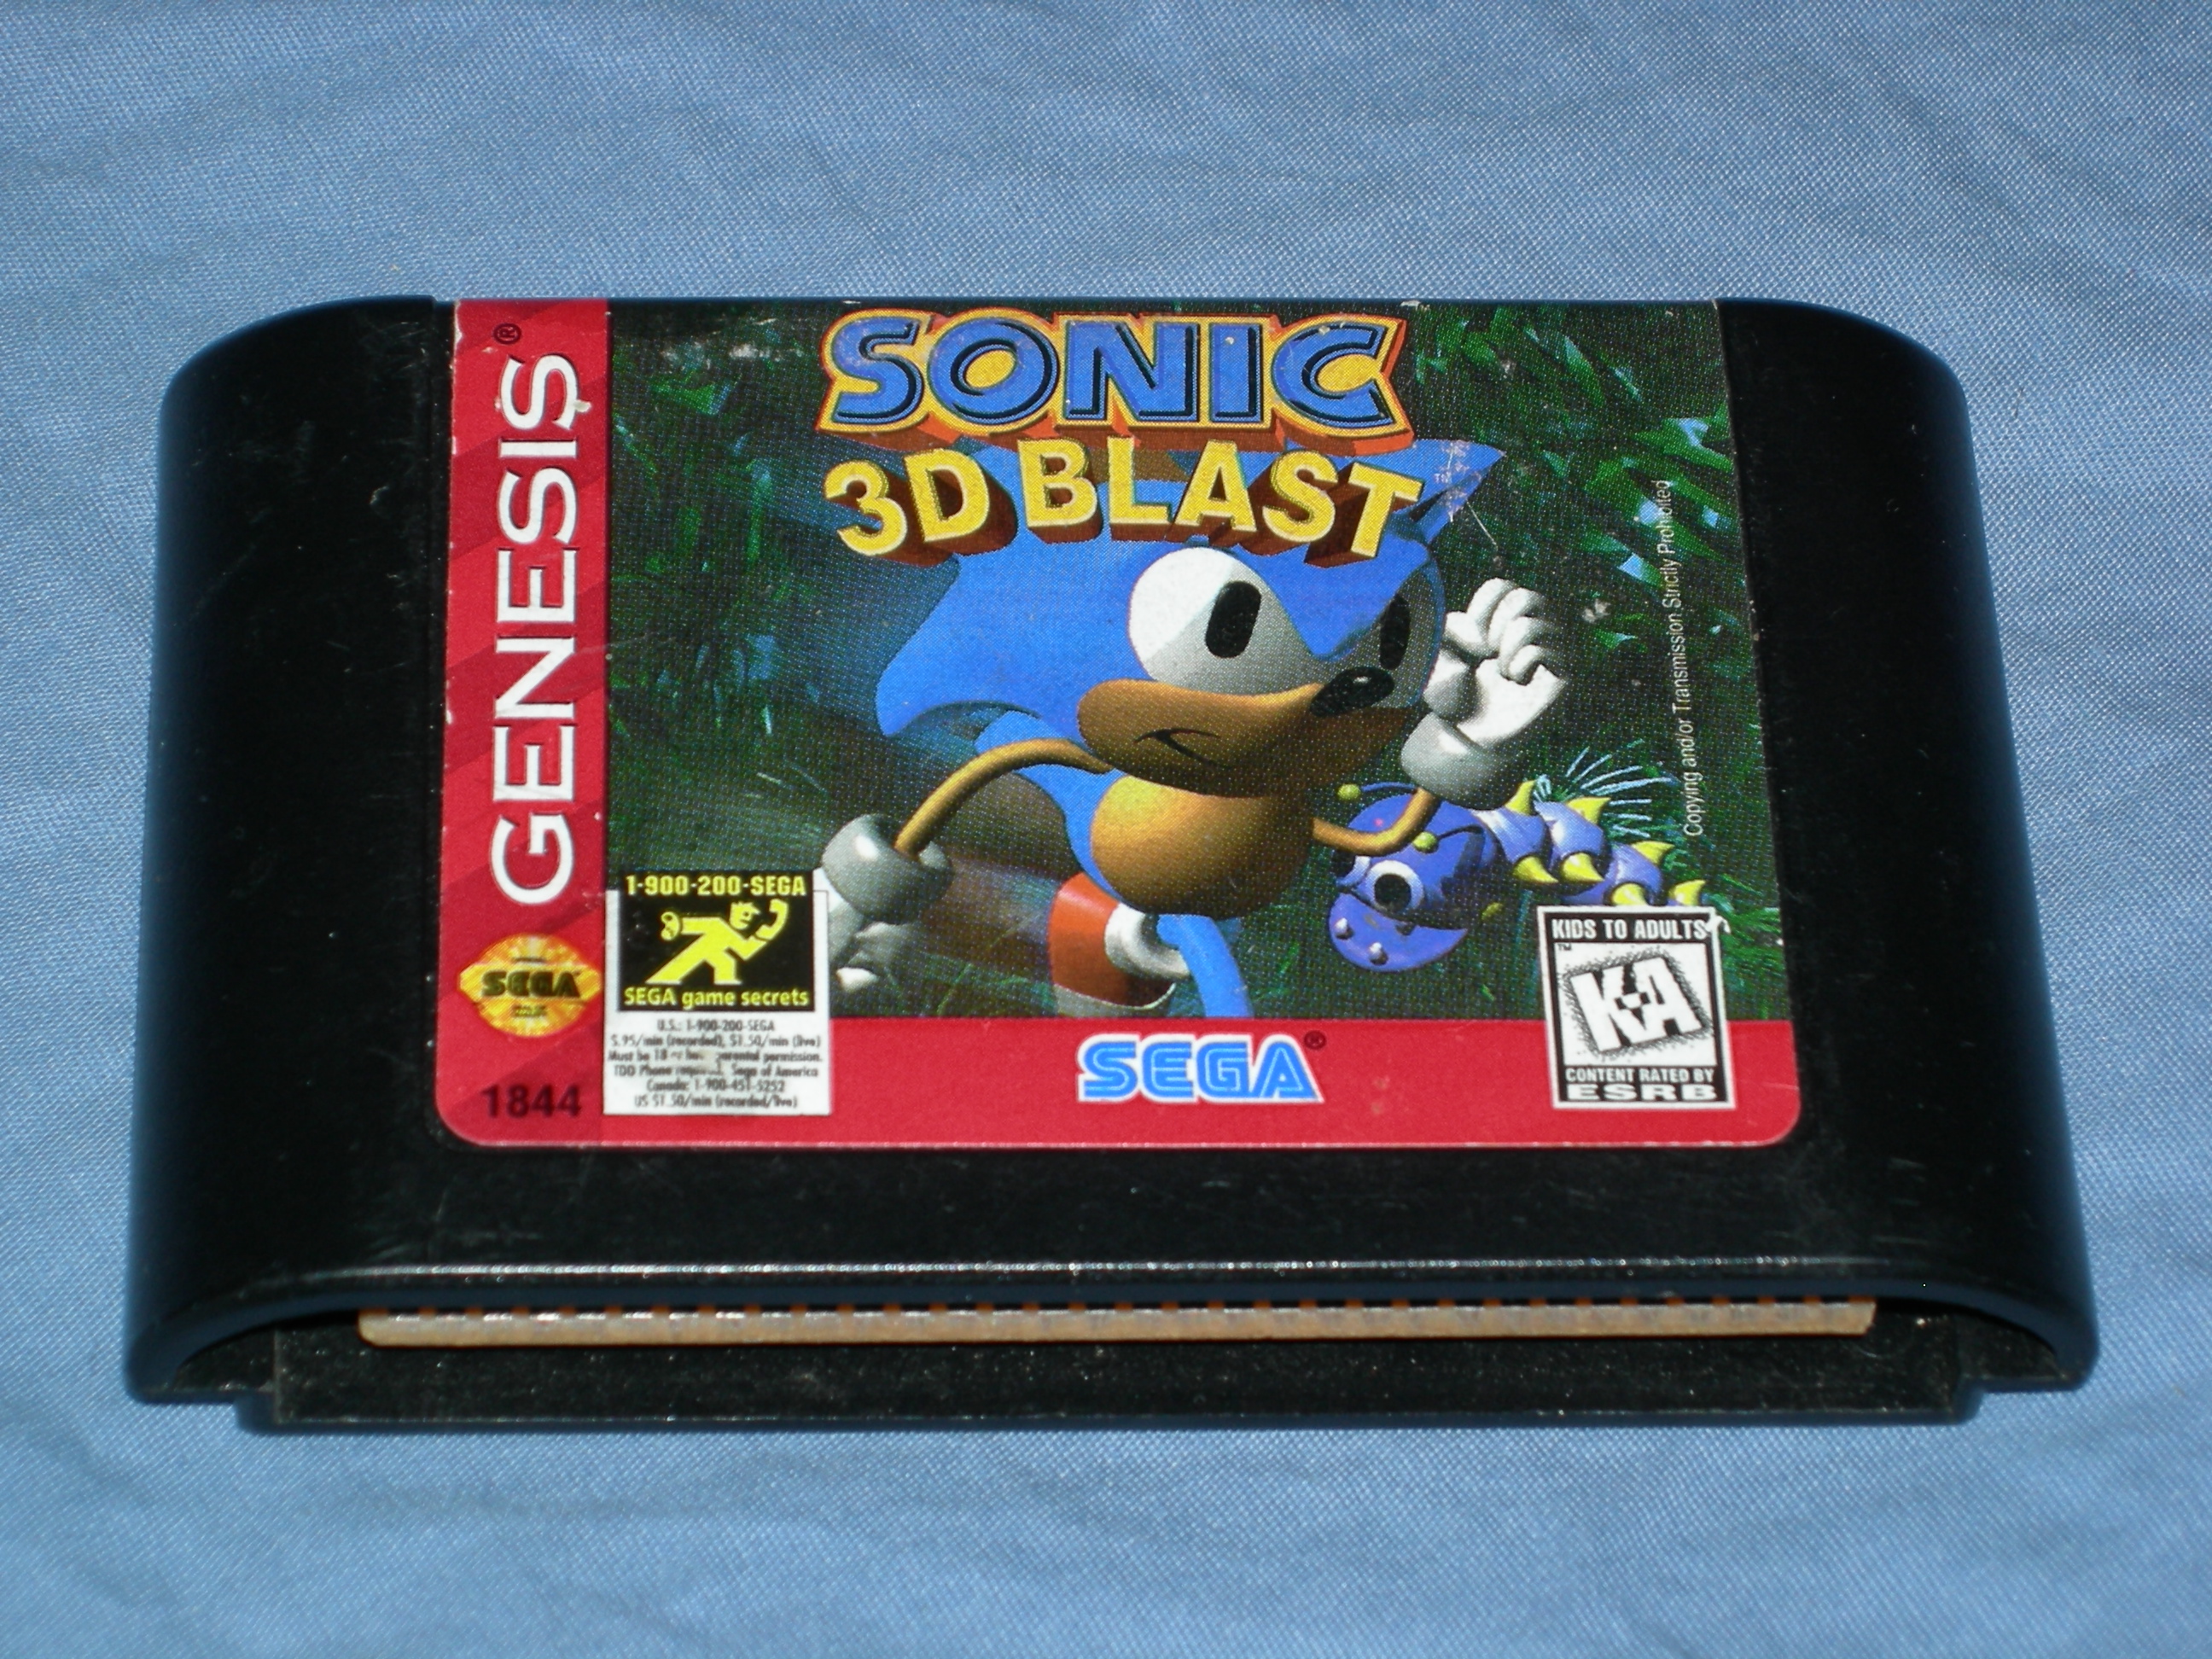 Игры сега на флешке. Sega Mega Drive 2 картриджи Sonic. Картриджи Соник 3 Sega Mega Drive. Box картриджей Sega Mega Drive. Sega Mega Drive картриджи Sonic.